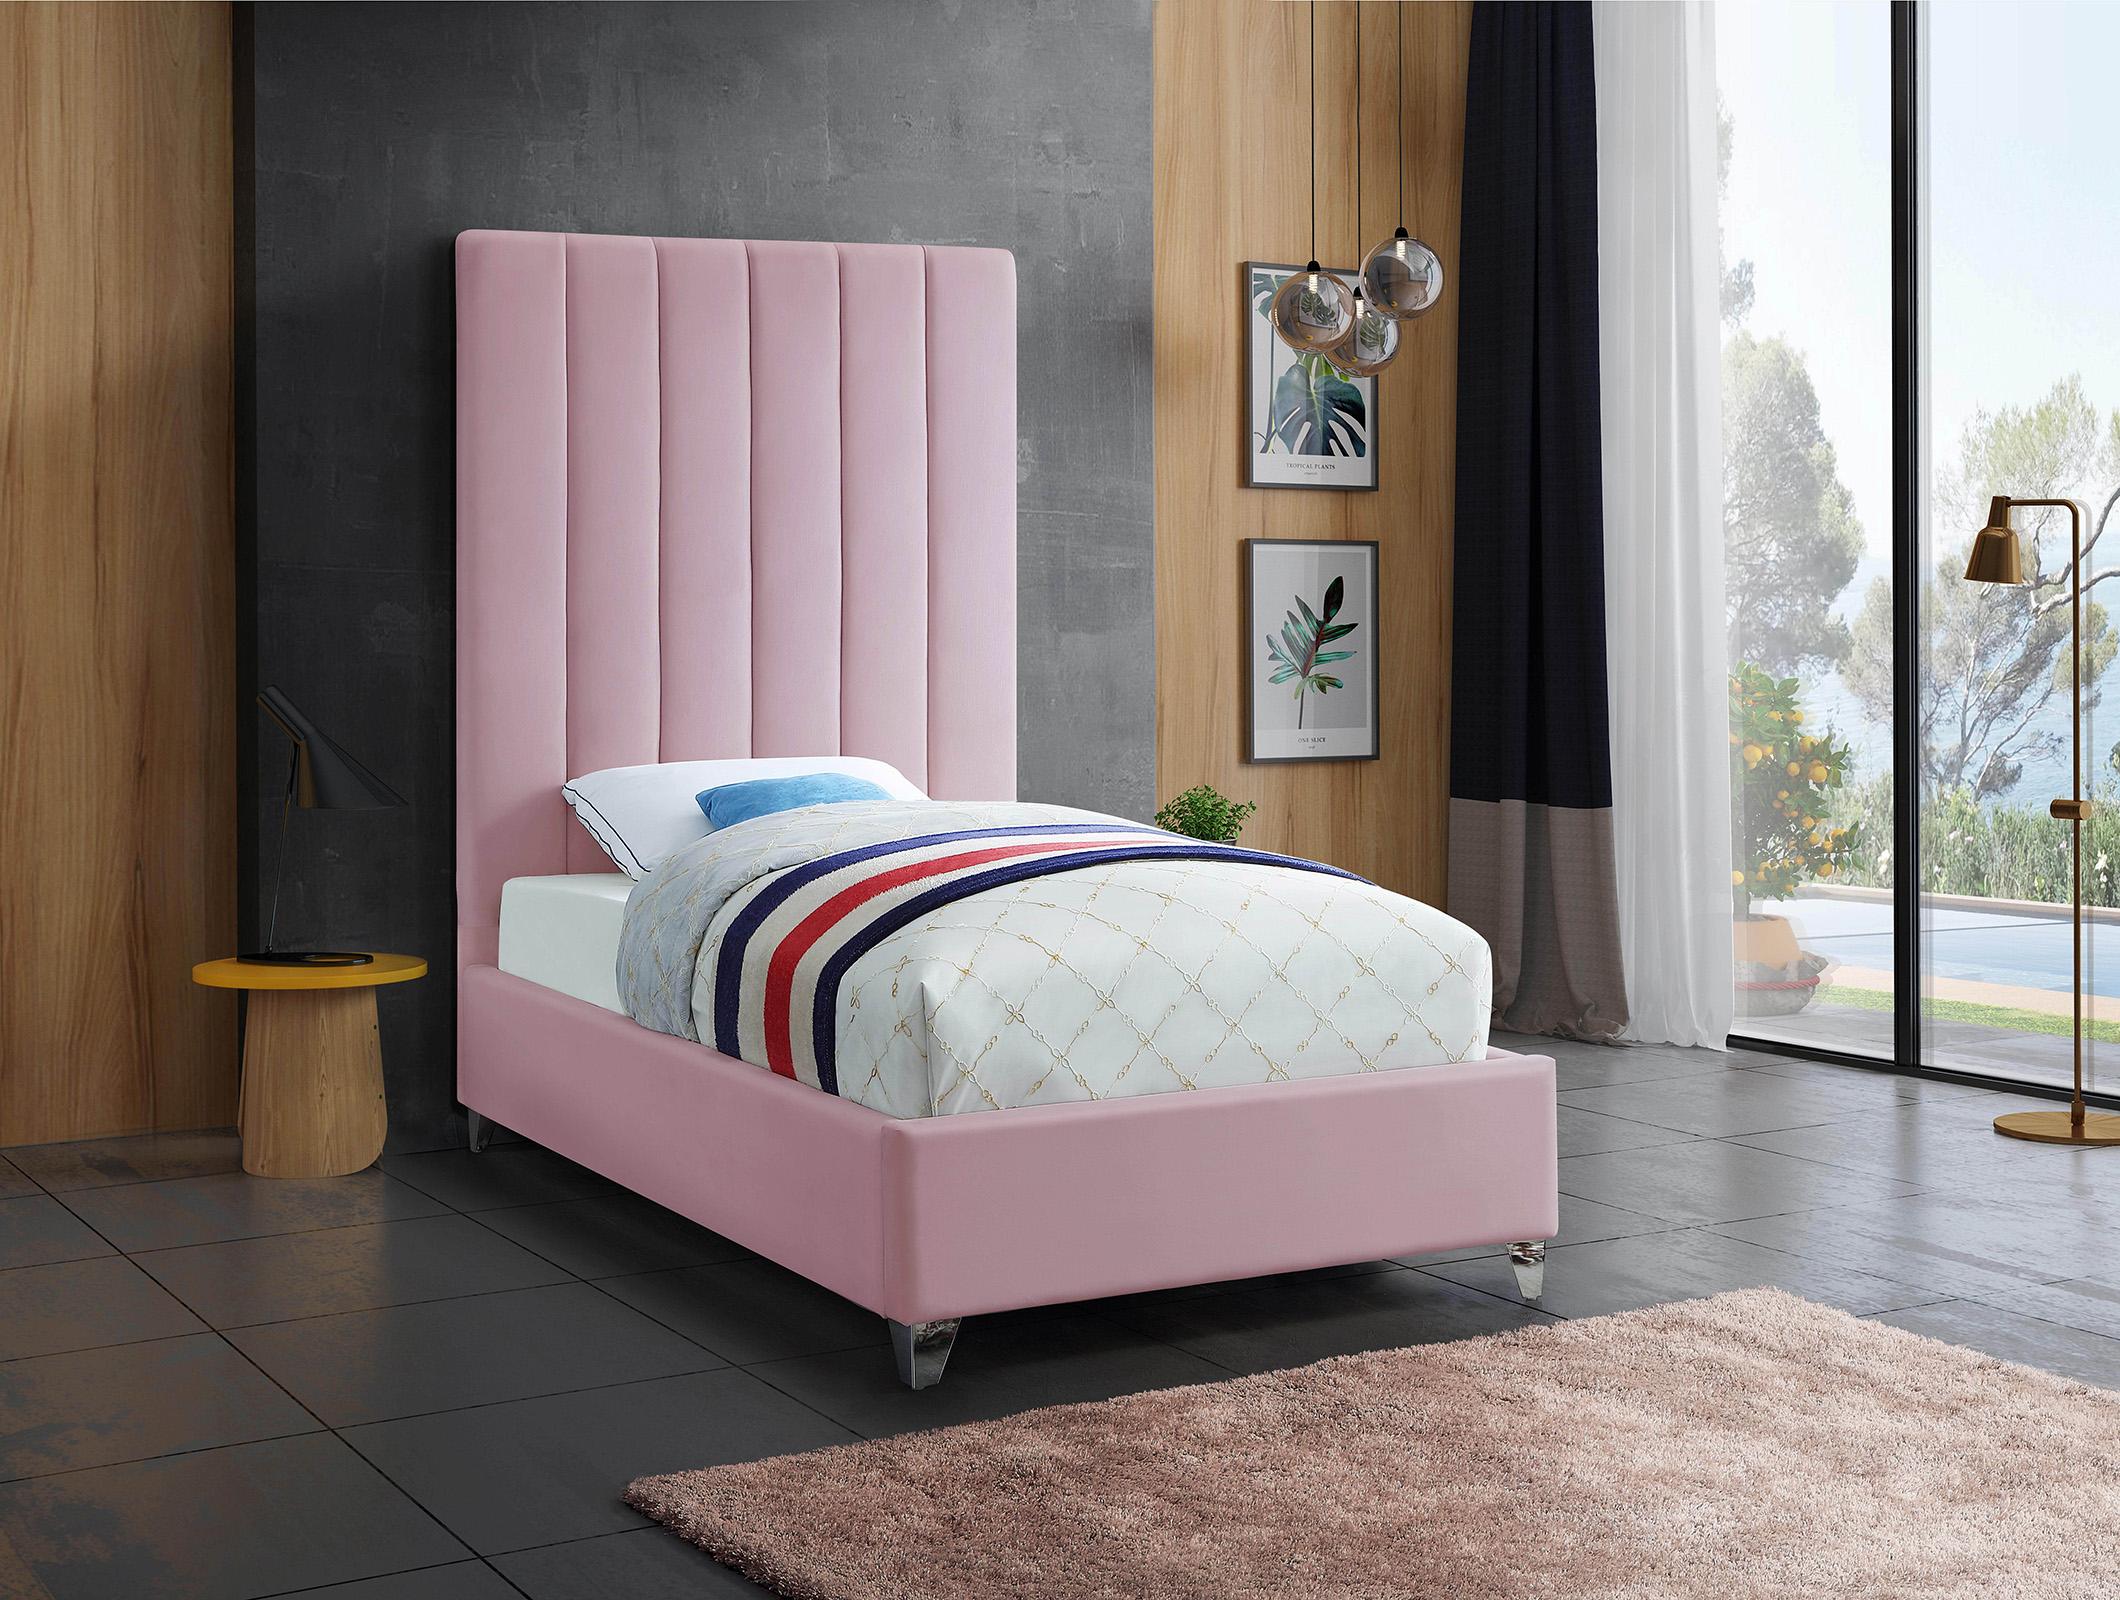 

    
Meridian Furniture VIA ViaPink-T Platform Bed Pink ViaPink-T
